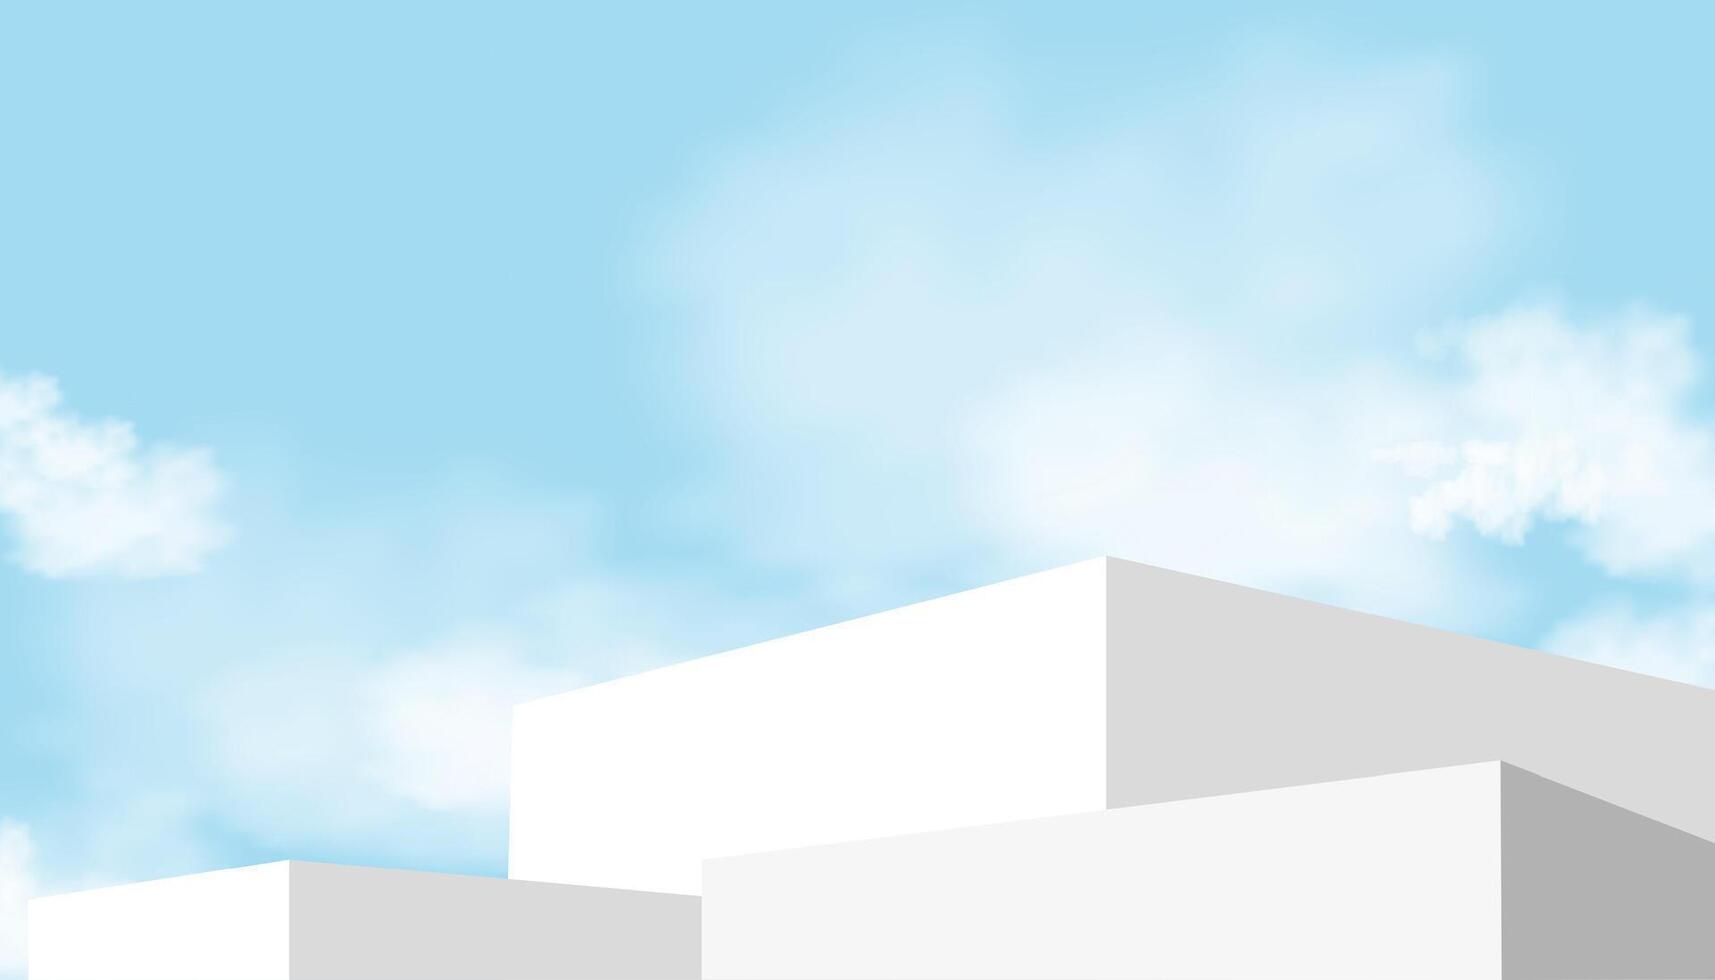 branco pódio degrau em céu azul e nuvem plano de fundo, plataforma 3d brincar exibição degrau para verão Cosmético produtos apresentação para venda, promoção, web on-line, cena natureza Primavera céu com construção parede vetor